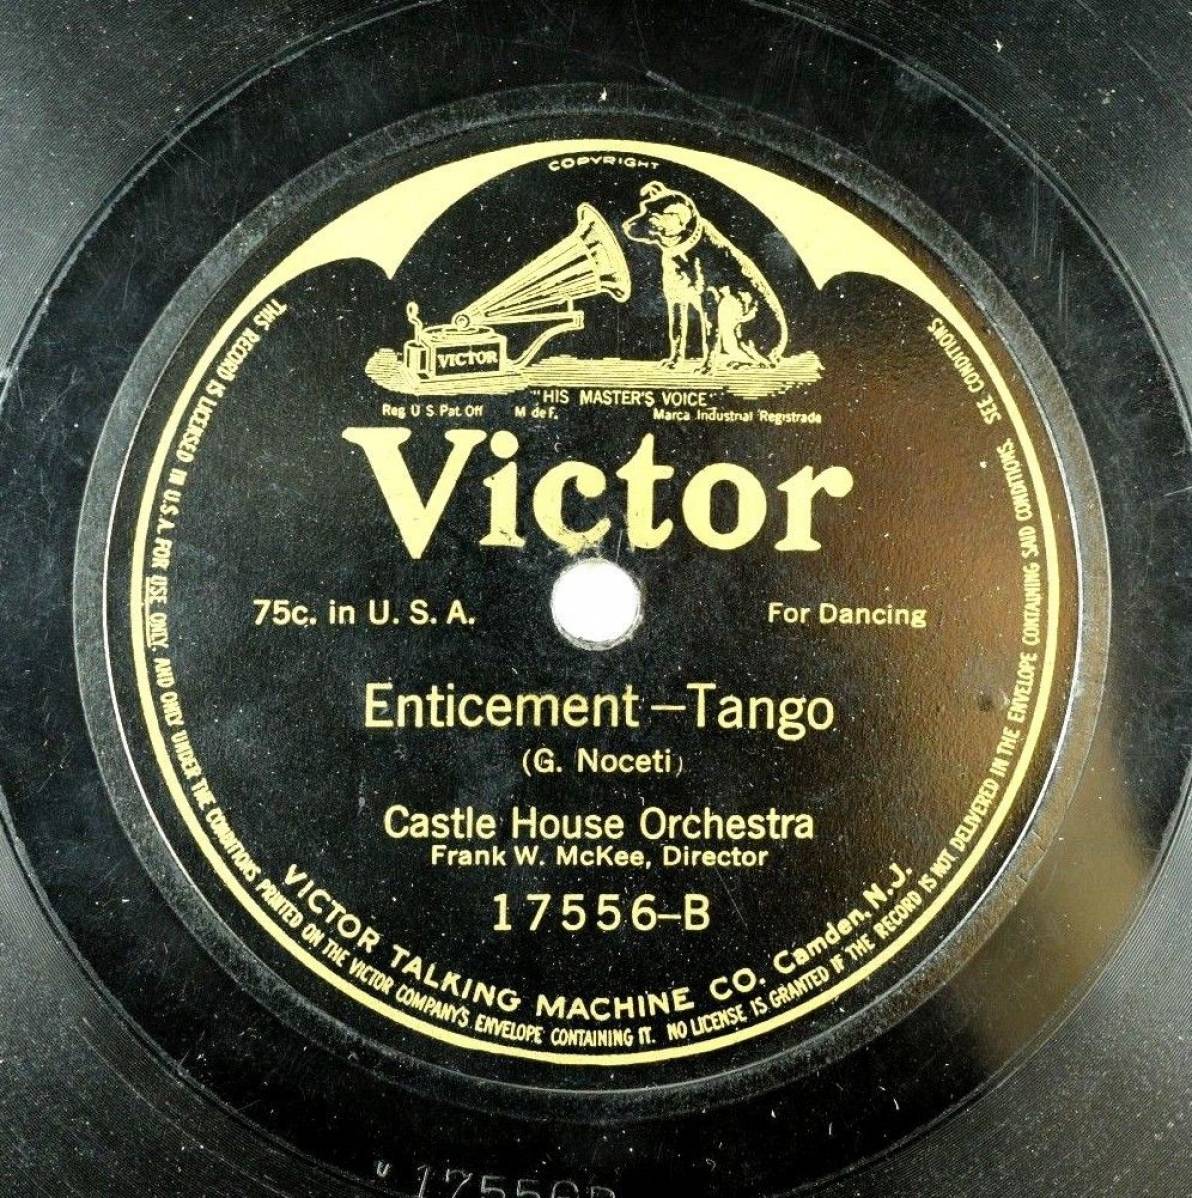 Enticement Tango - G. Noceti 1913